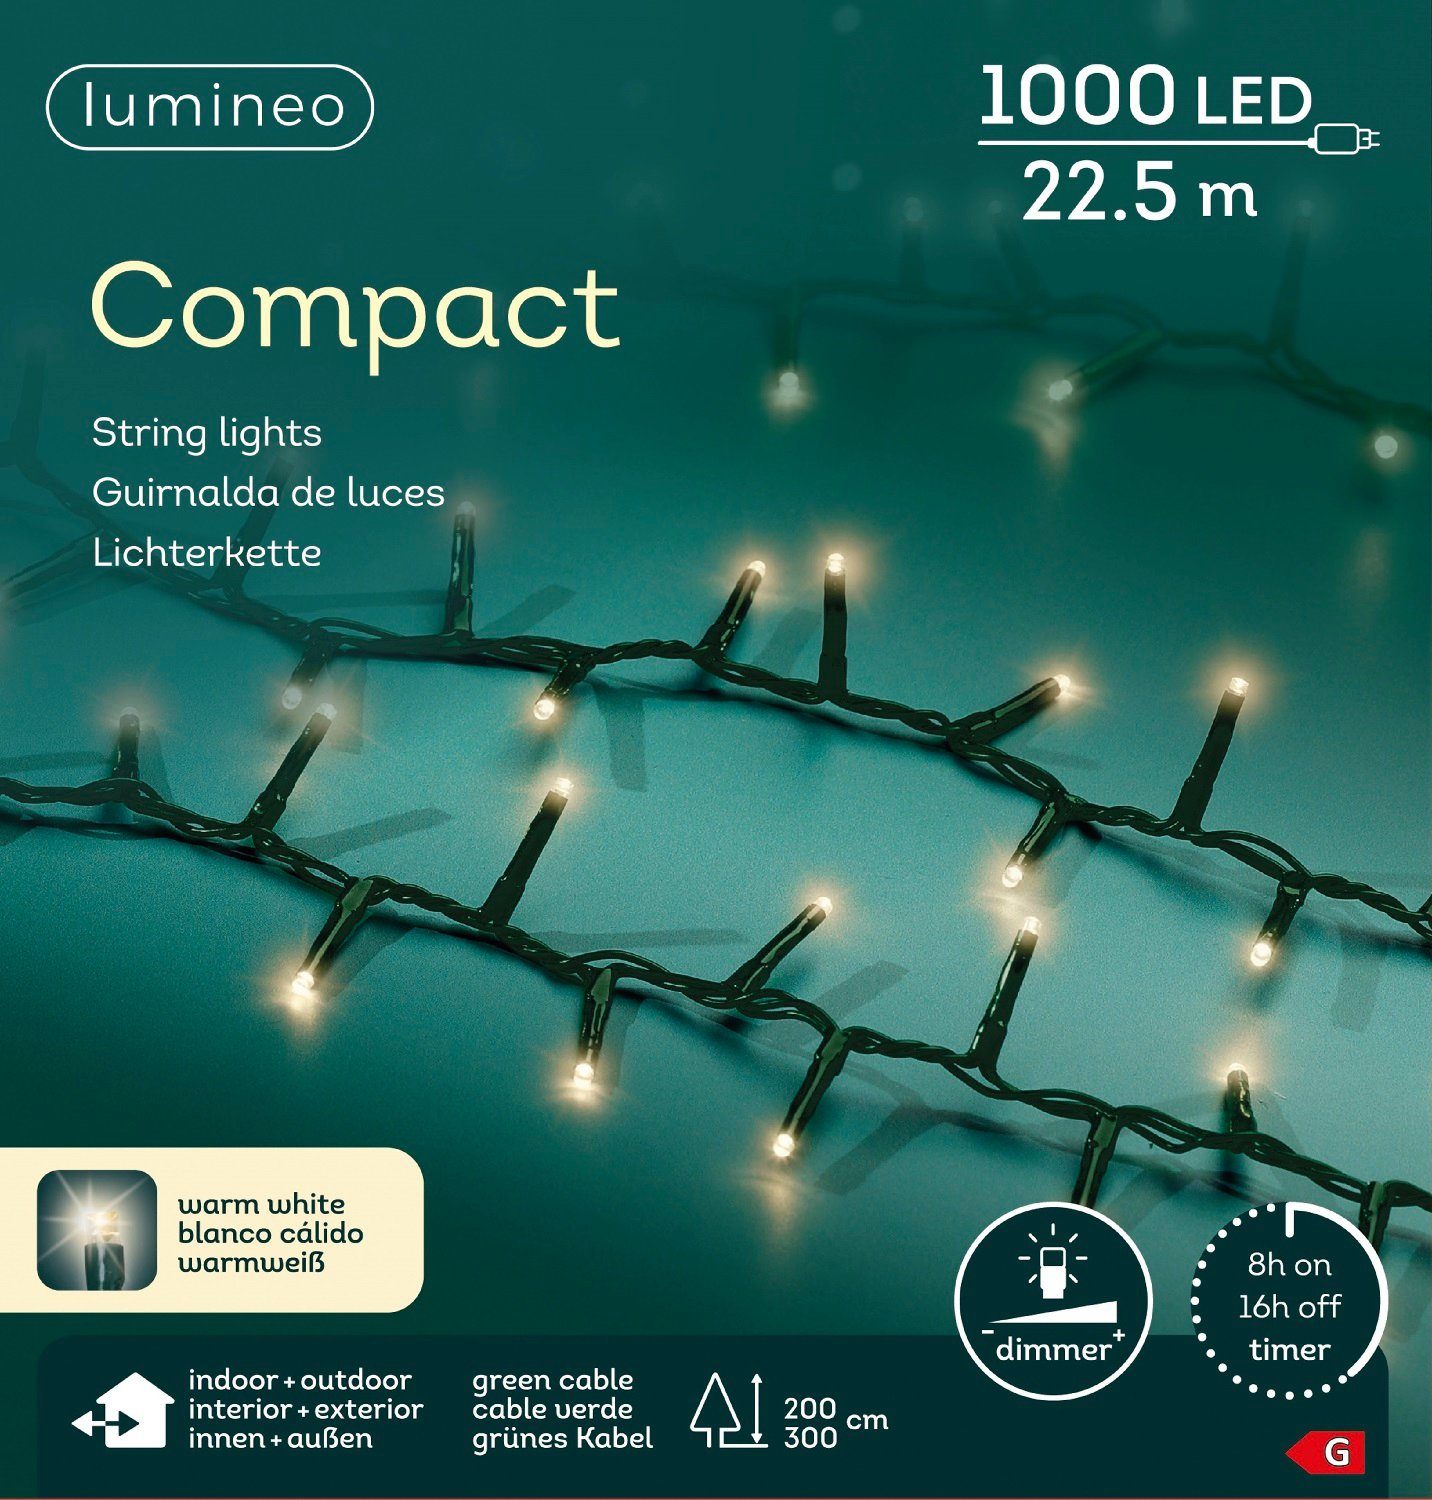 Kaemingk Lumineo LED-Lichterkette Lumineo Lichterkette Compact 1000 LED 22,5 m warm weiß, grünes Kabel, Dimmbar, Timer, Indoor, Outdoor